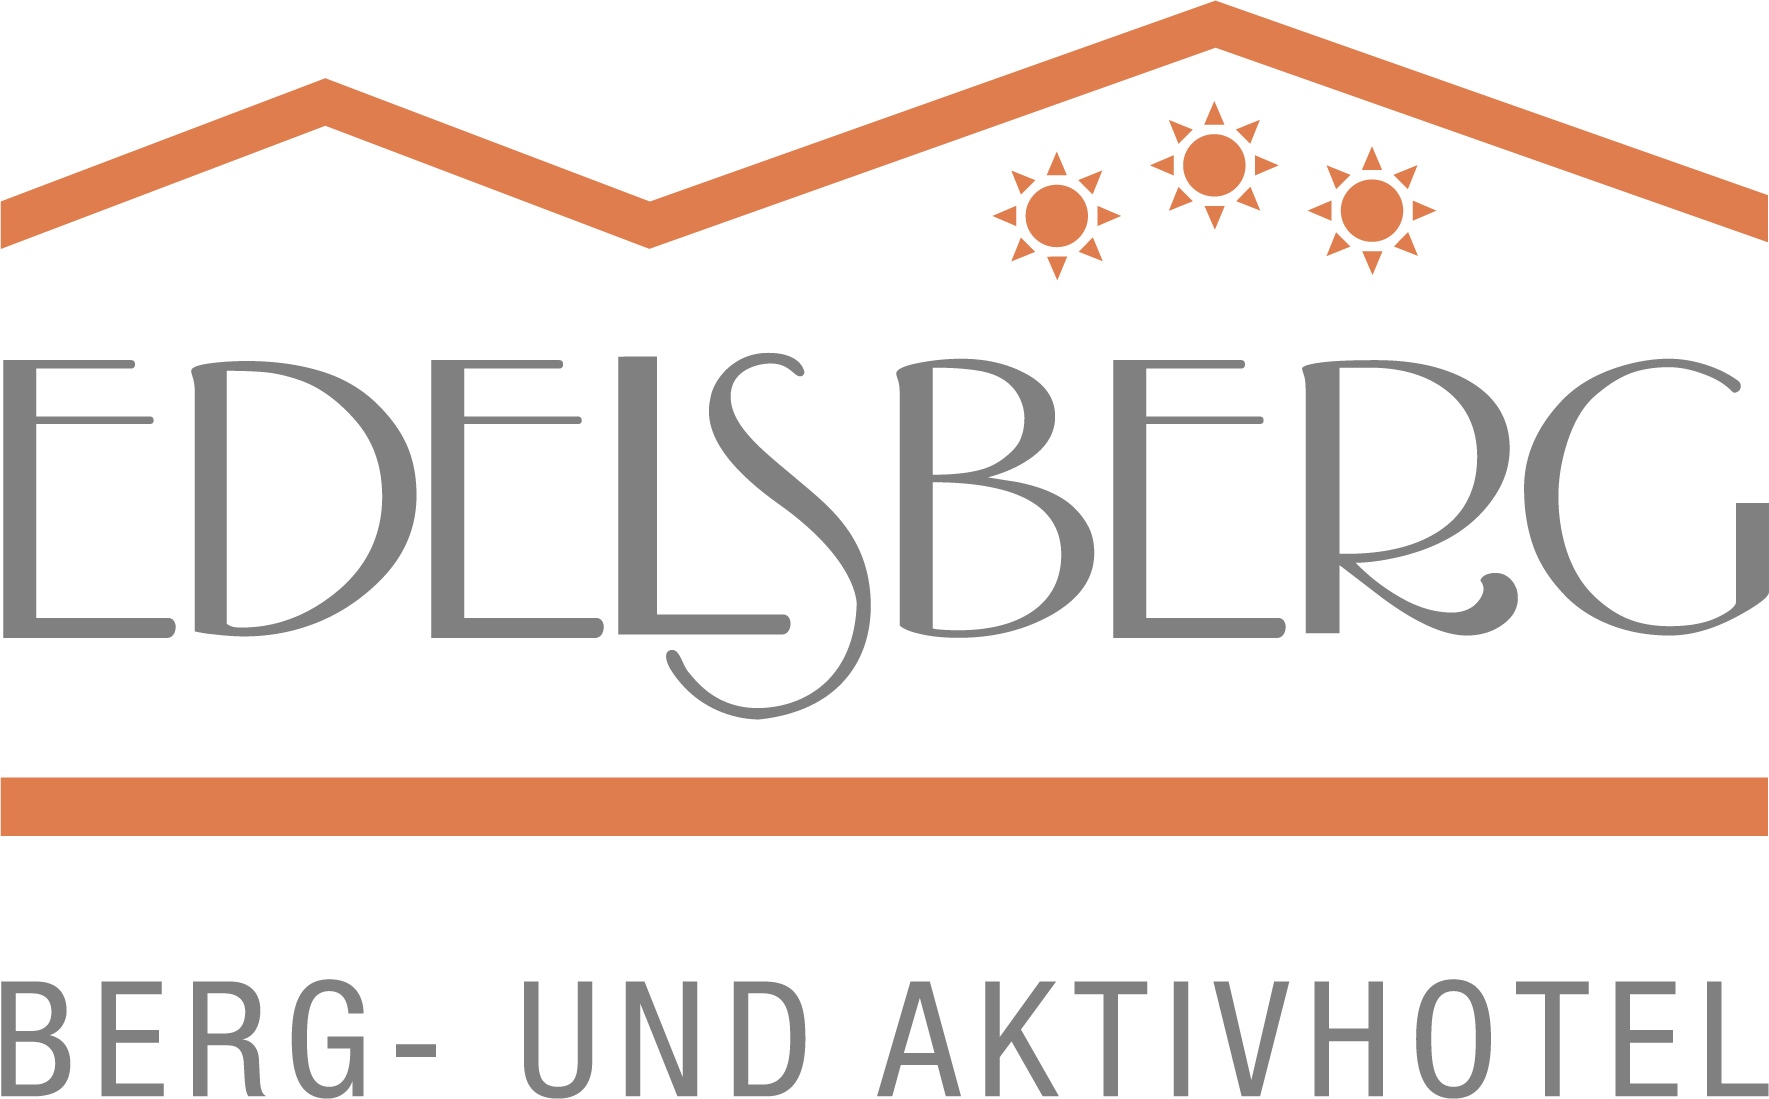 Berg- und Aktivhotel Edelsberg